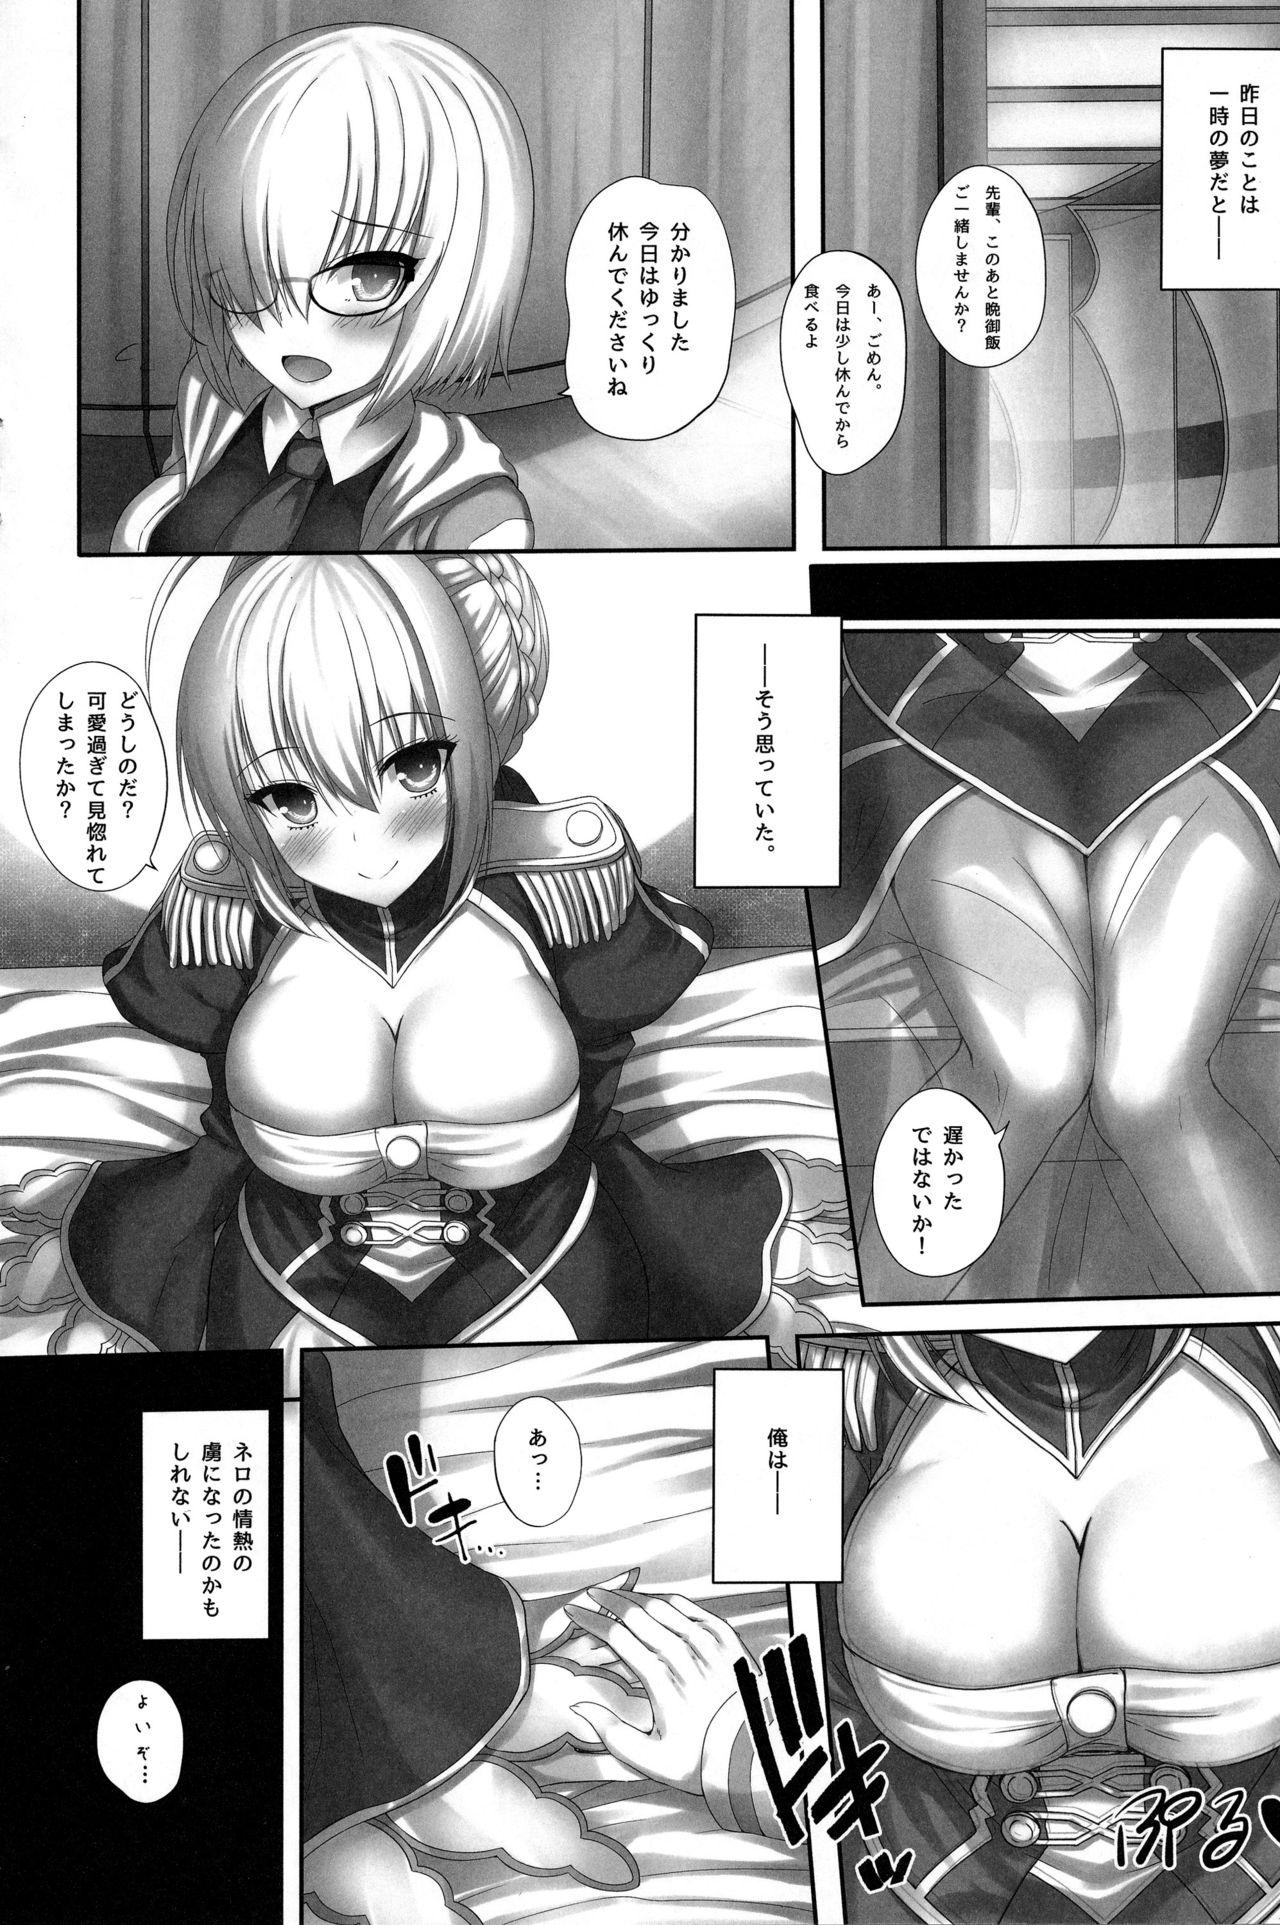 Submissive Saiai no Nero. - Fate grand order Stepdad - Page 9